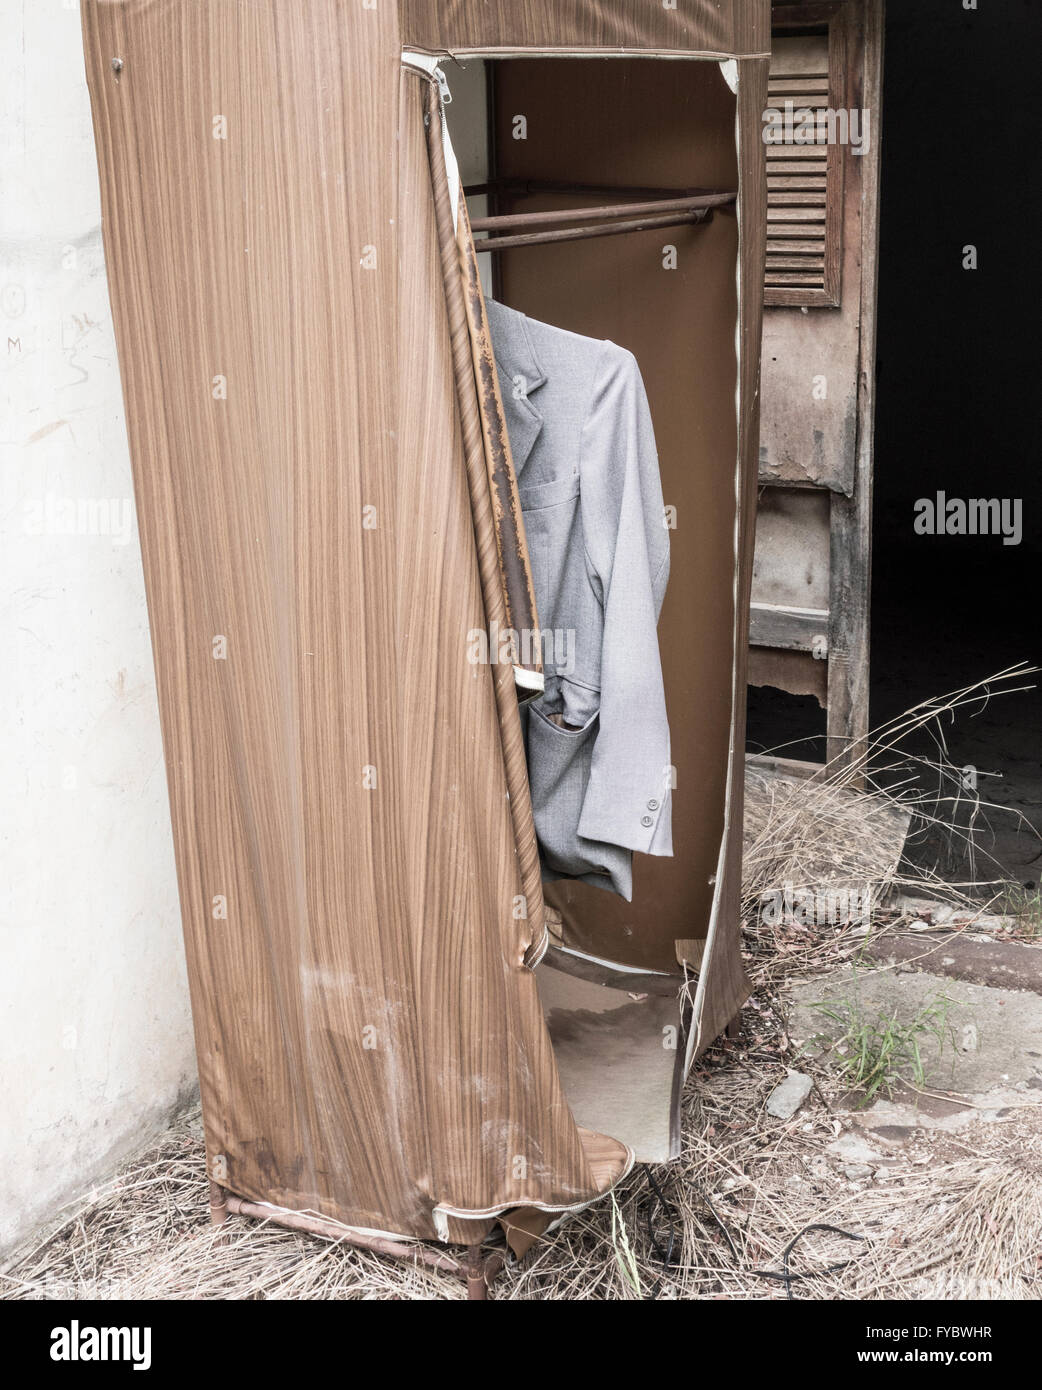 Jacke im Kleiderschrank außerhalb verfallenes Haus hängen. Stockfoto